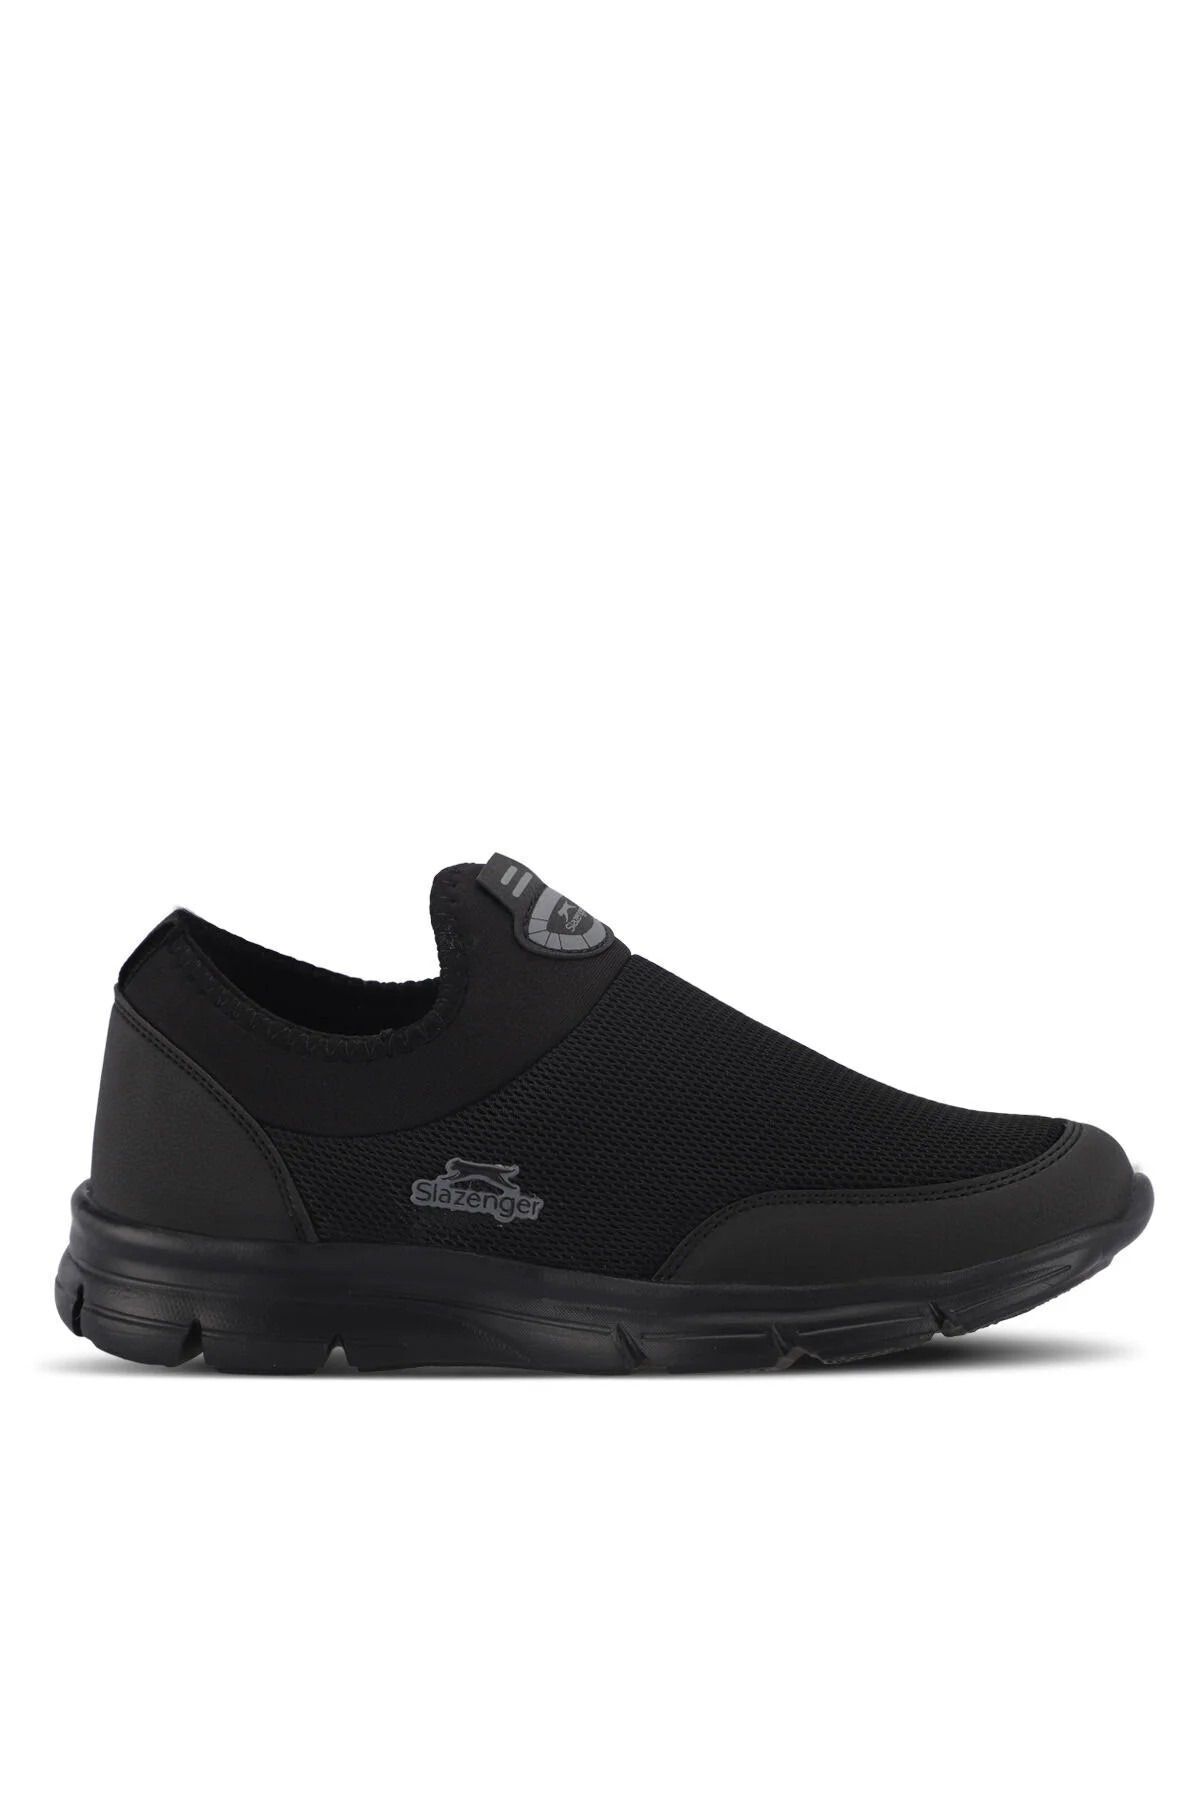 Slazenger EDINBURG Unisex Sneaker Ayakkabı Siyah / Siyah